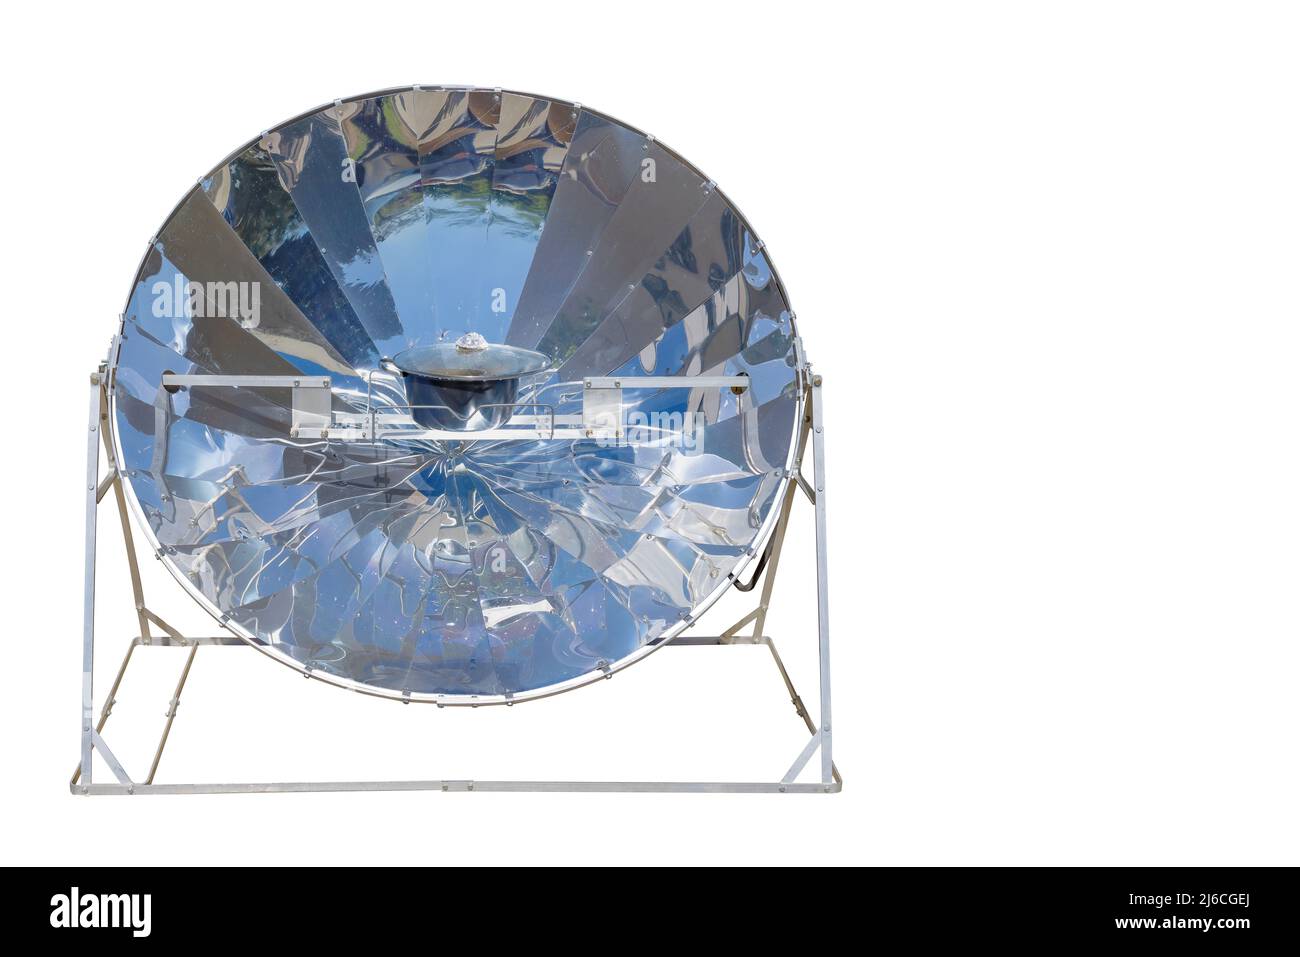 Cucina con energia solare, forno solare parabolico nel mezzo della cottura di un piatto grazie all'energia solare isolato su sfondo bianco con spazio per il testo Foto Stock